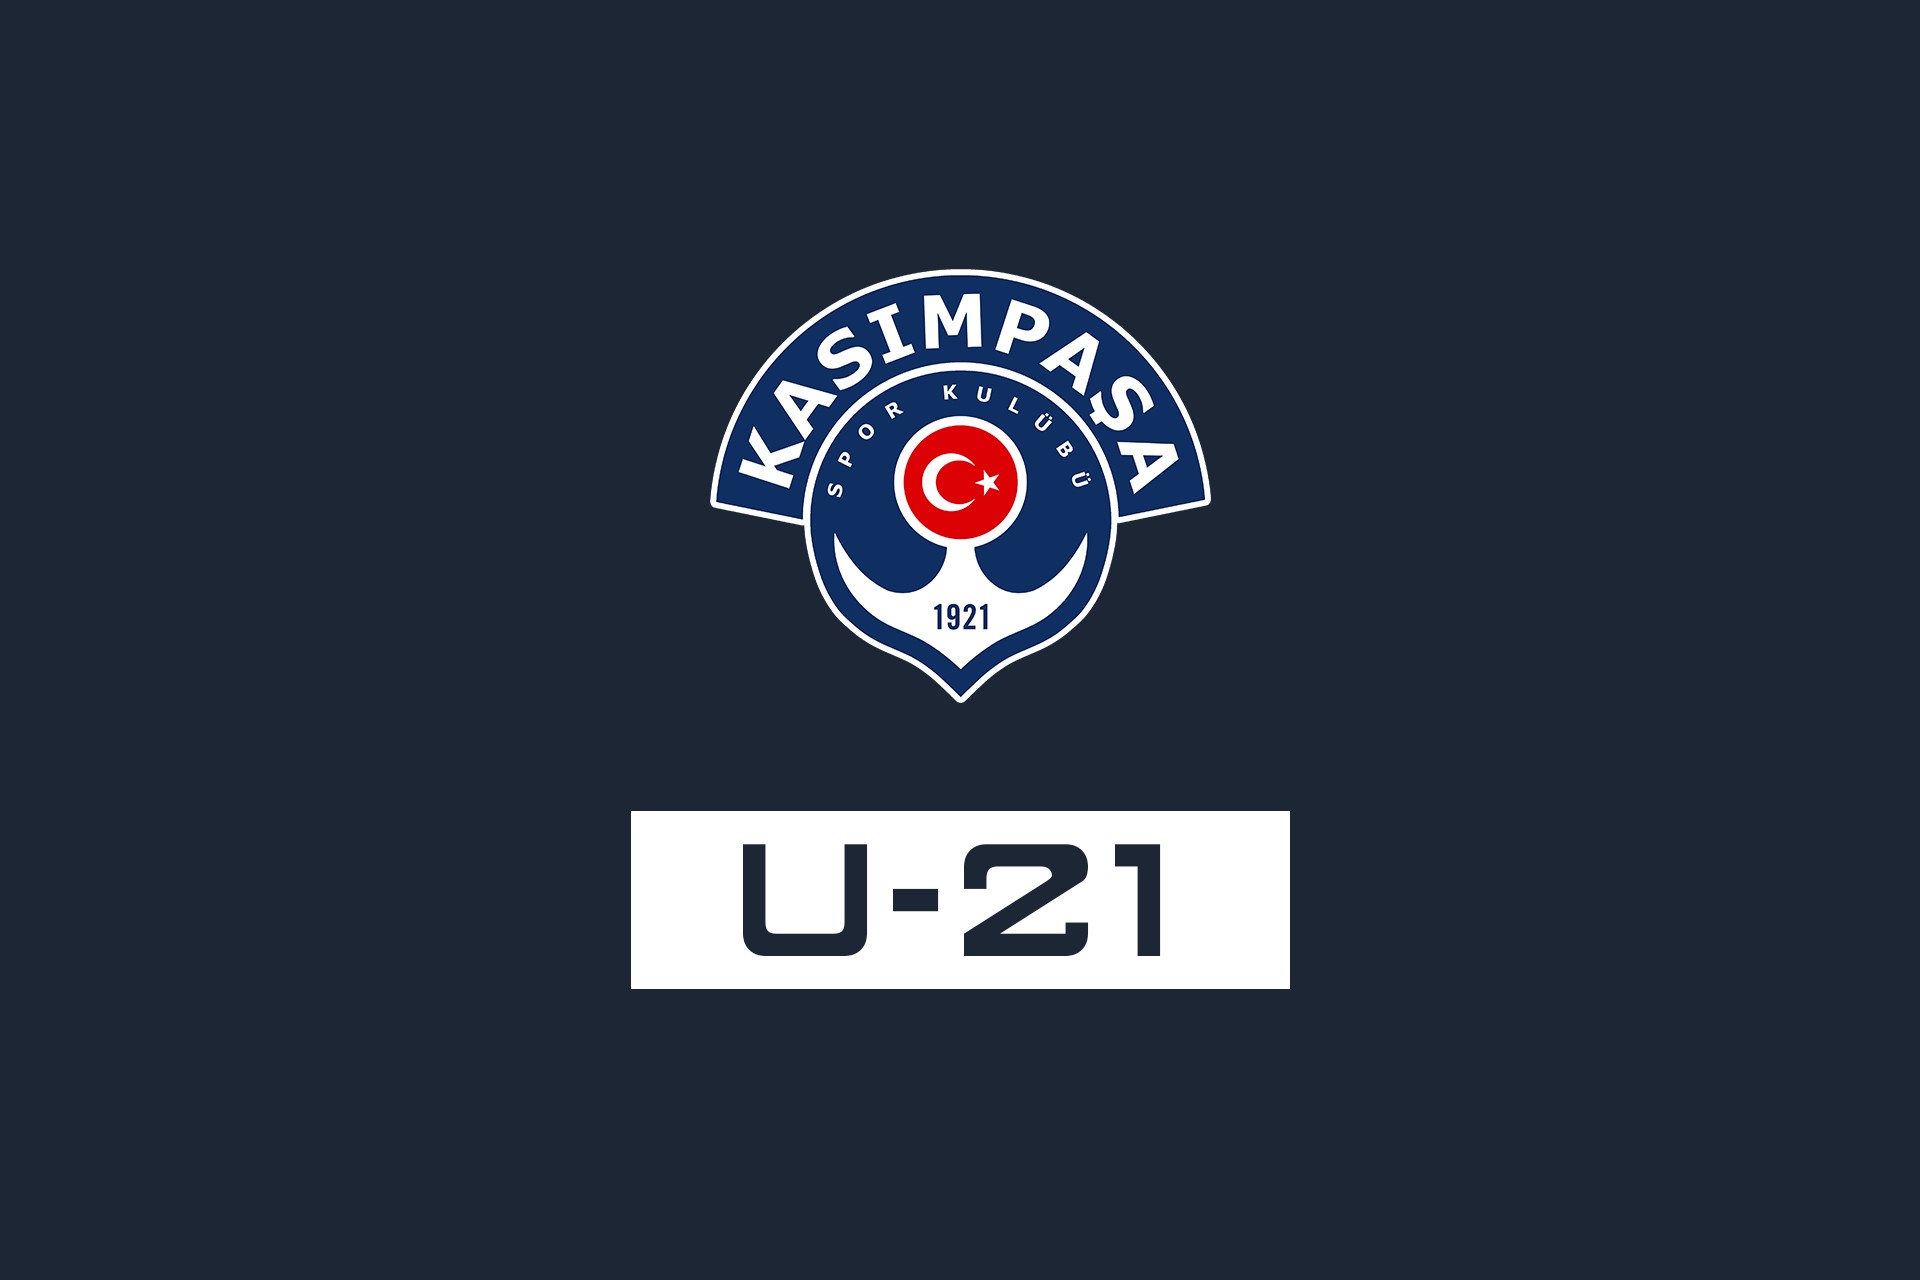 Kasımpaşa: 2 Akhisar: 0 (U21 Ligi)